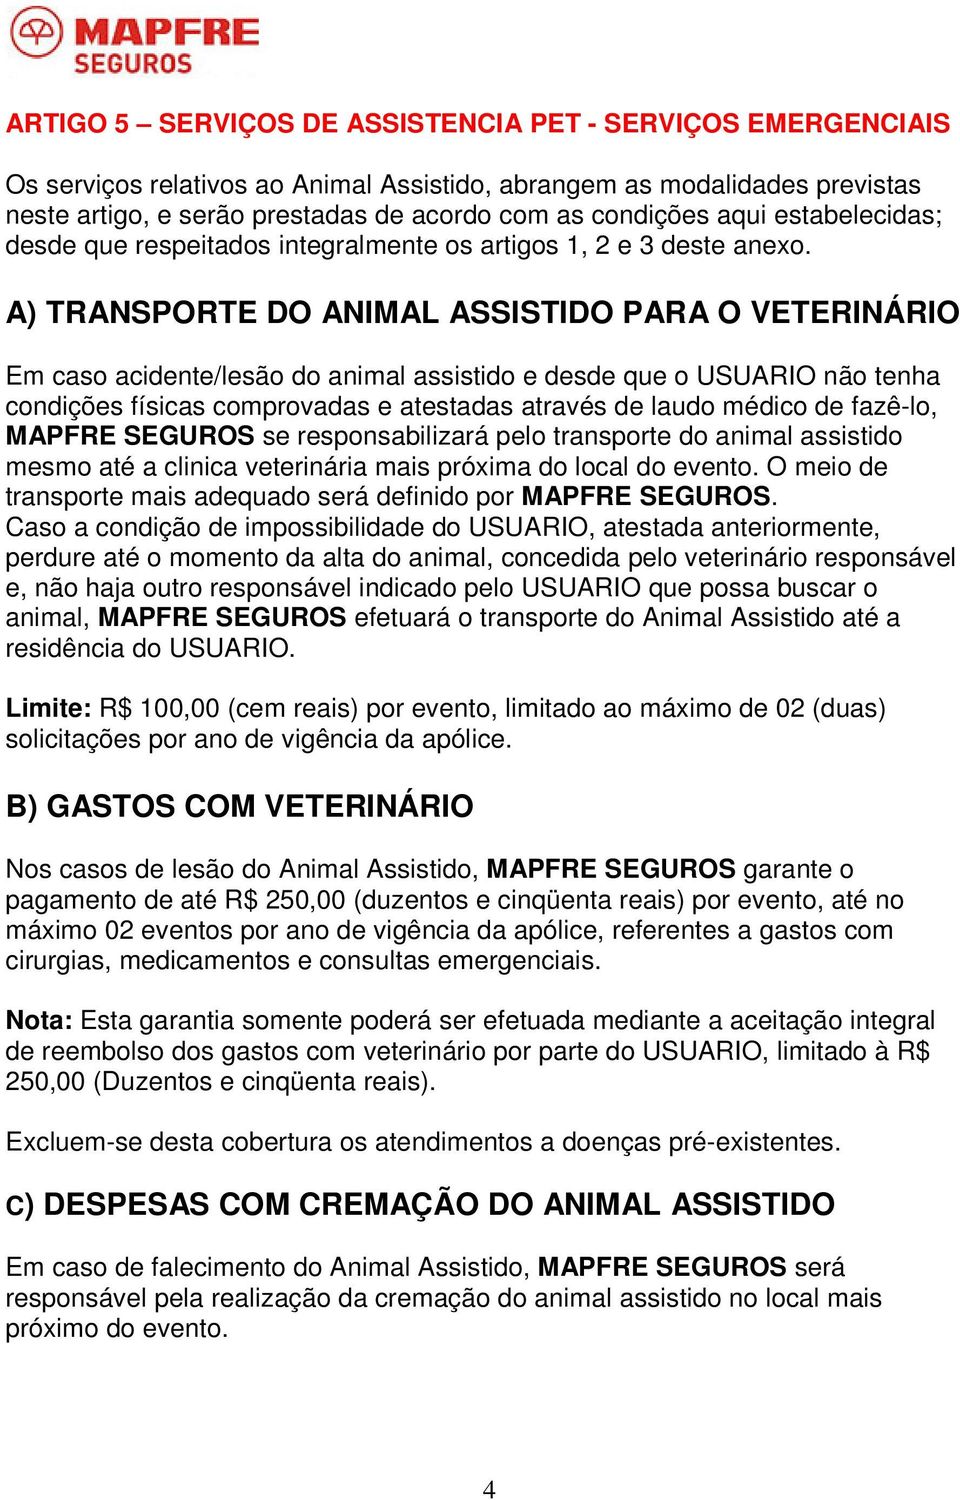 A) TRANSPORTE DO ANIMAL ASSISTIDO PARA O VETERINÁRIO Em caso acidente/lesão do animal assistido e desde que o USUARIO não tenha condições físicas comprovadas e atestadas através de laudo médico de